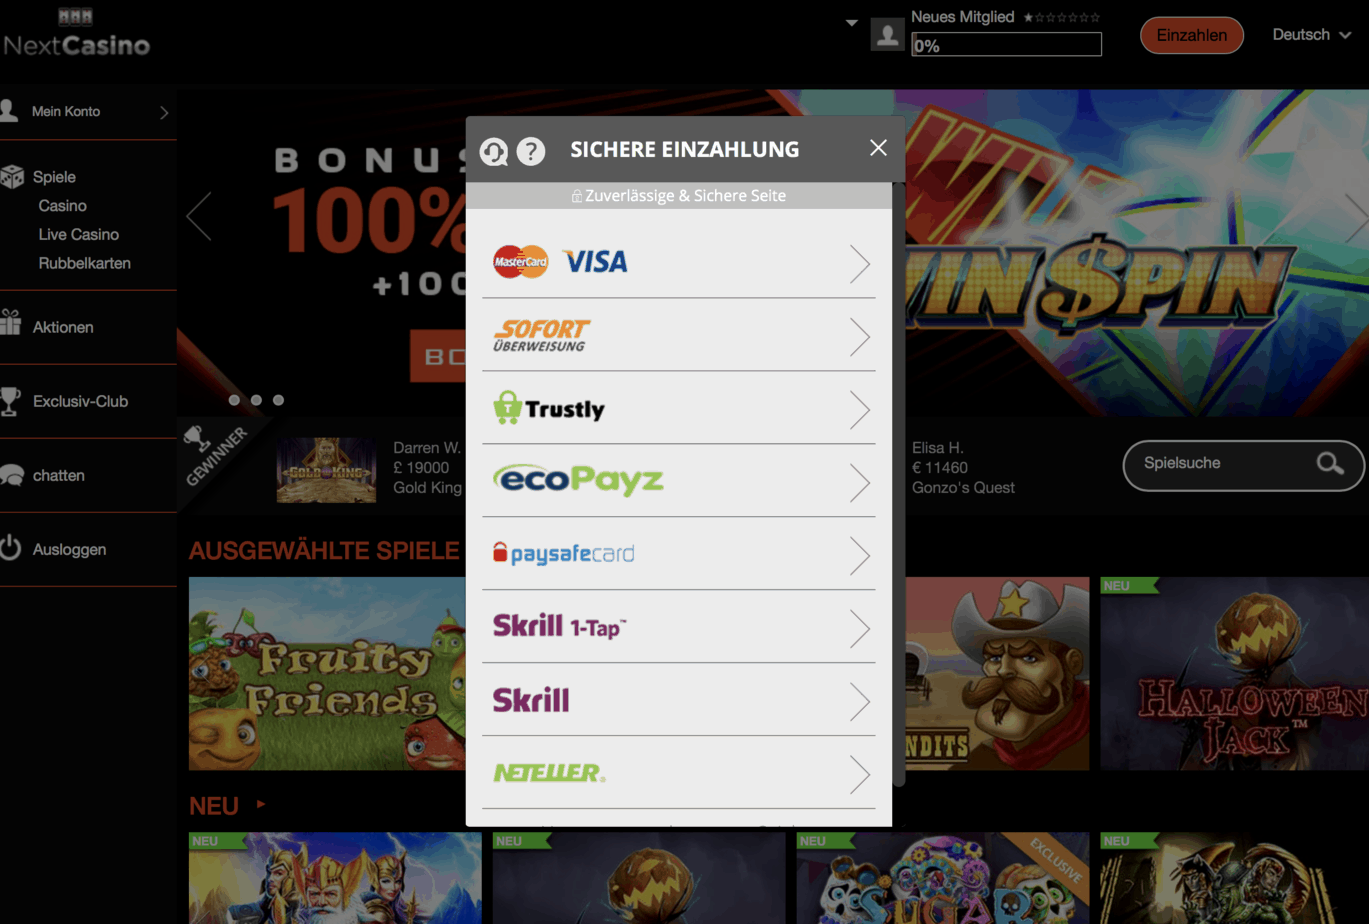 Következő kaszinó pénztár képernyőképe